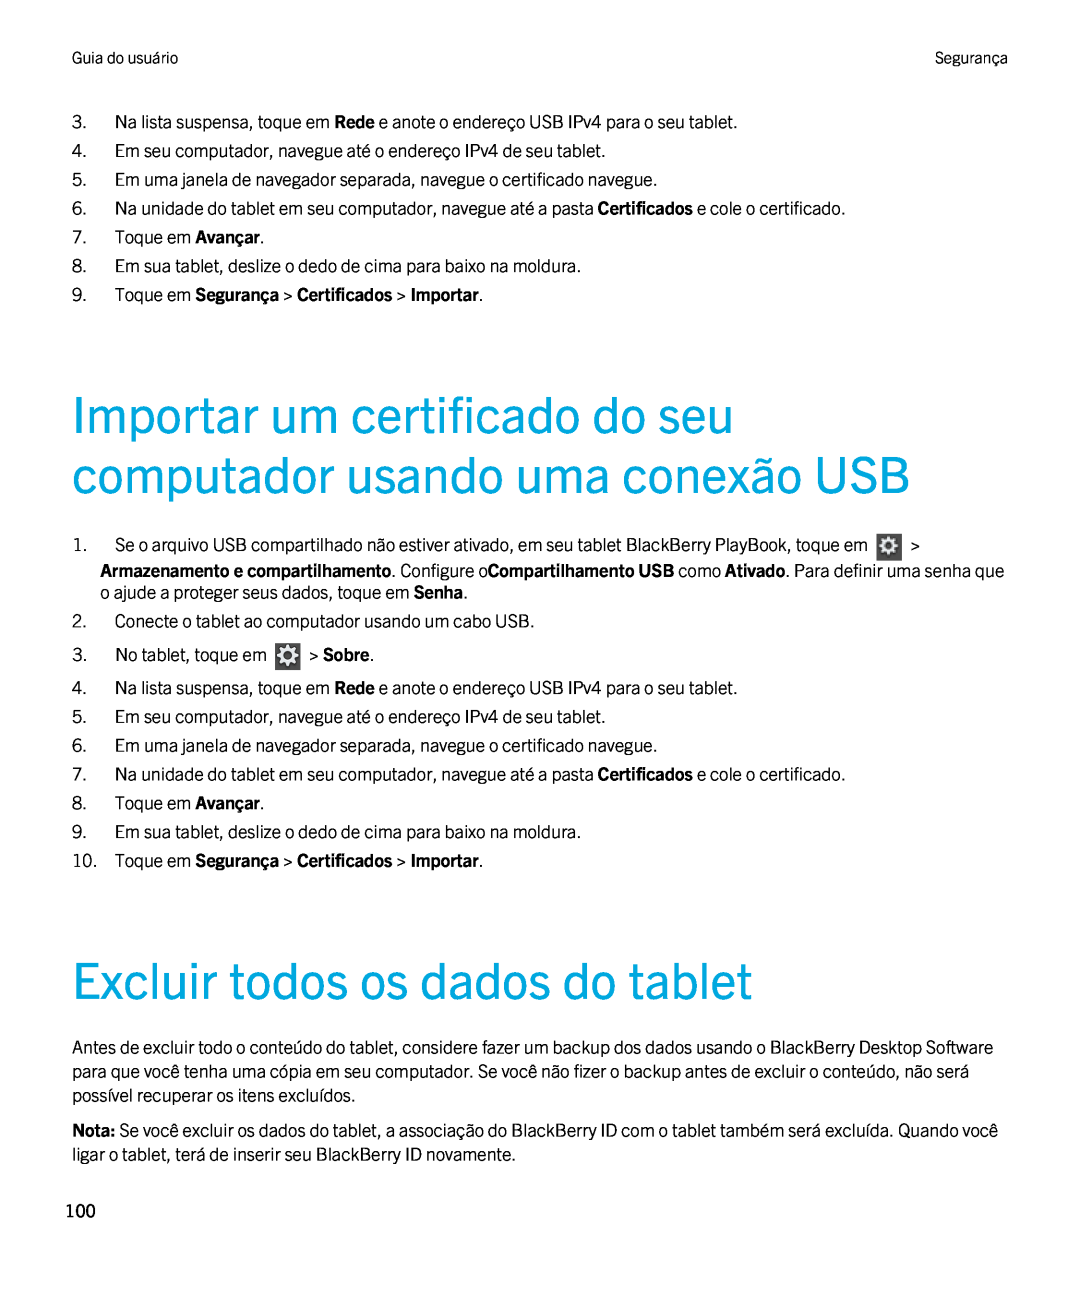 Blackberry 2.0.1 manual Importar um certificado do seu computador usando uma conexão USB, Excluir todos os dados do tablet 